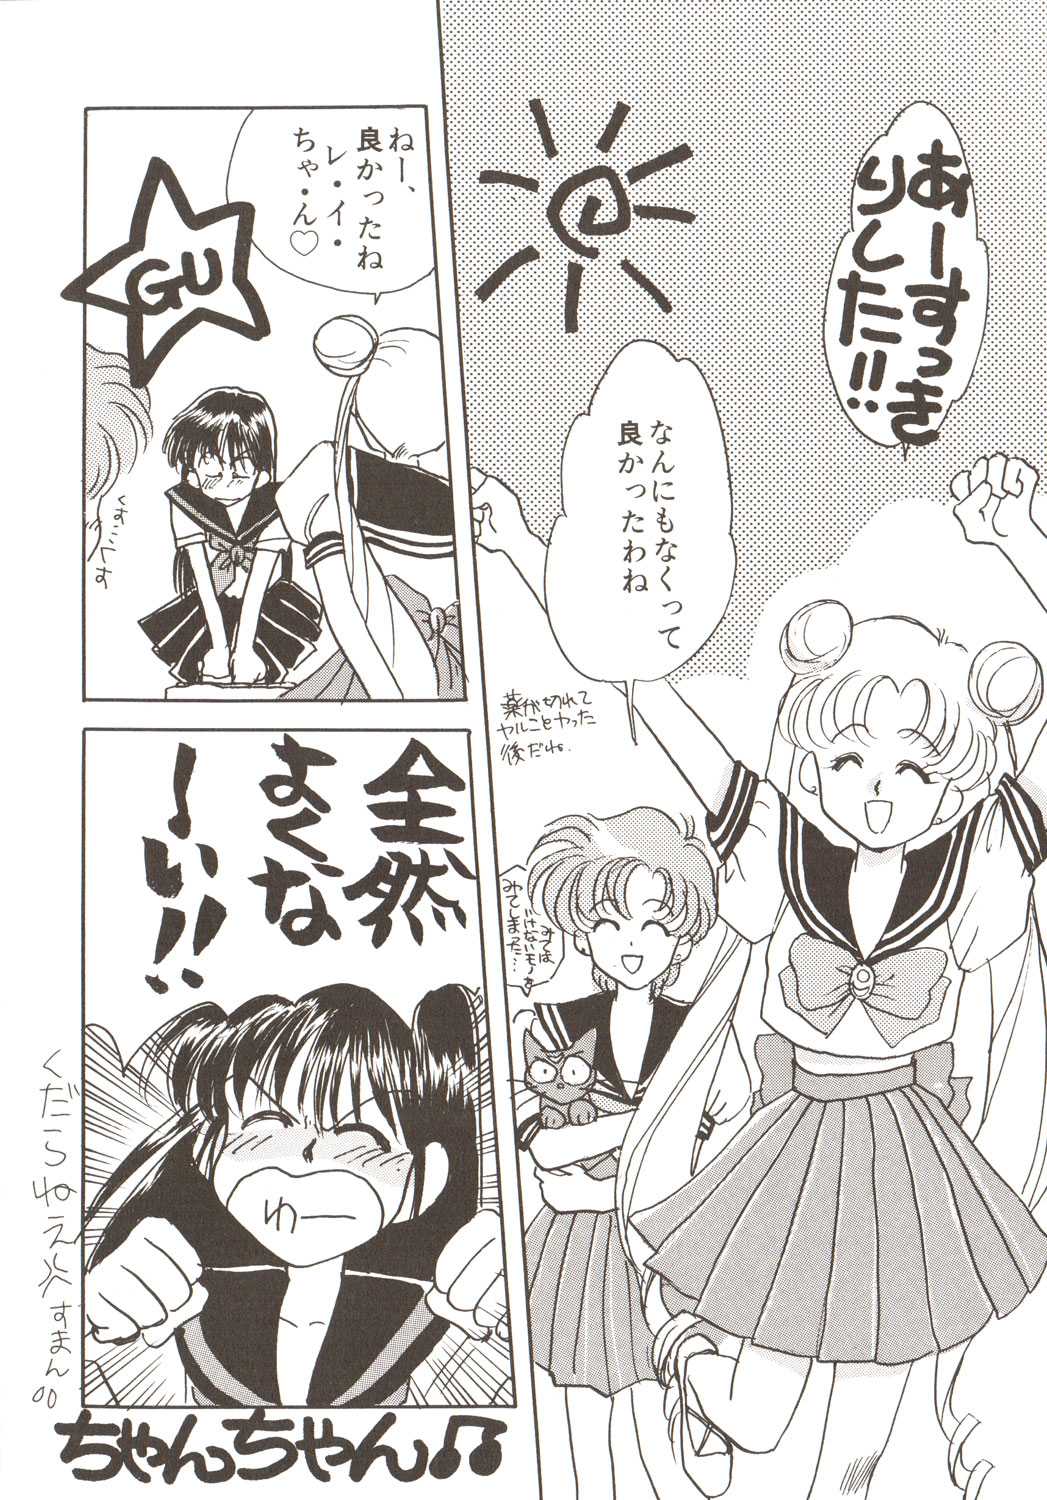 (Sailor Moon) Lunatic Party 3 